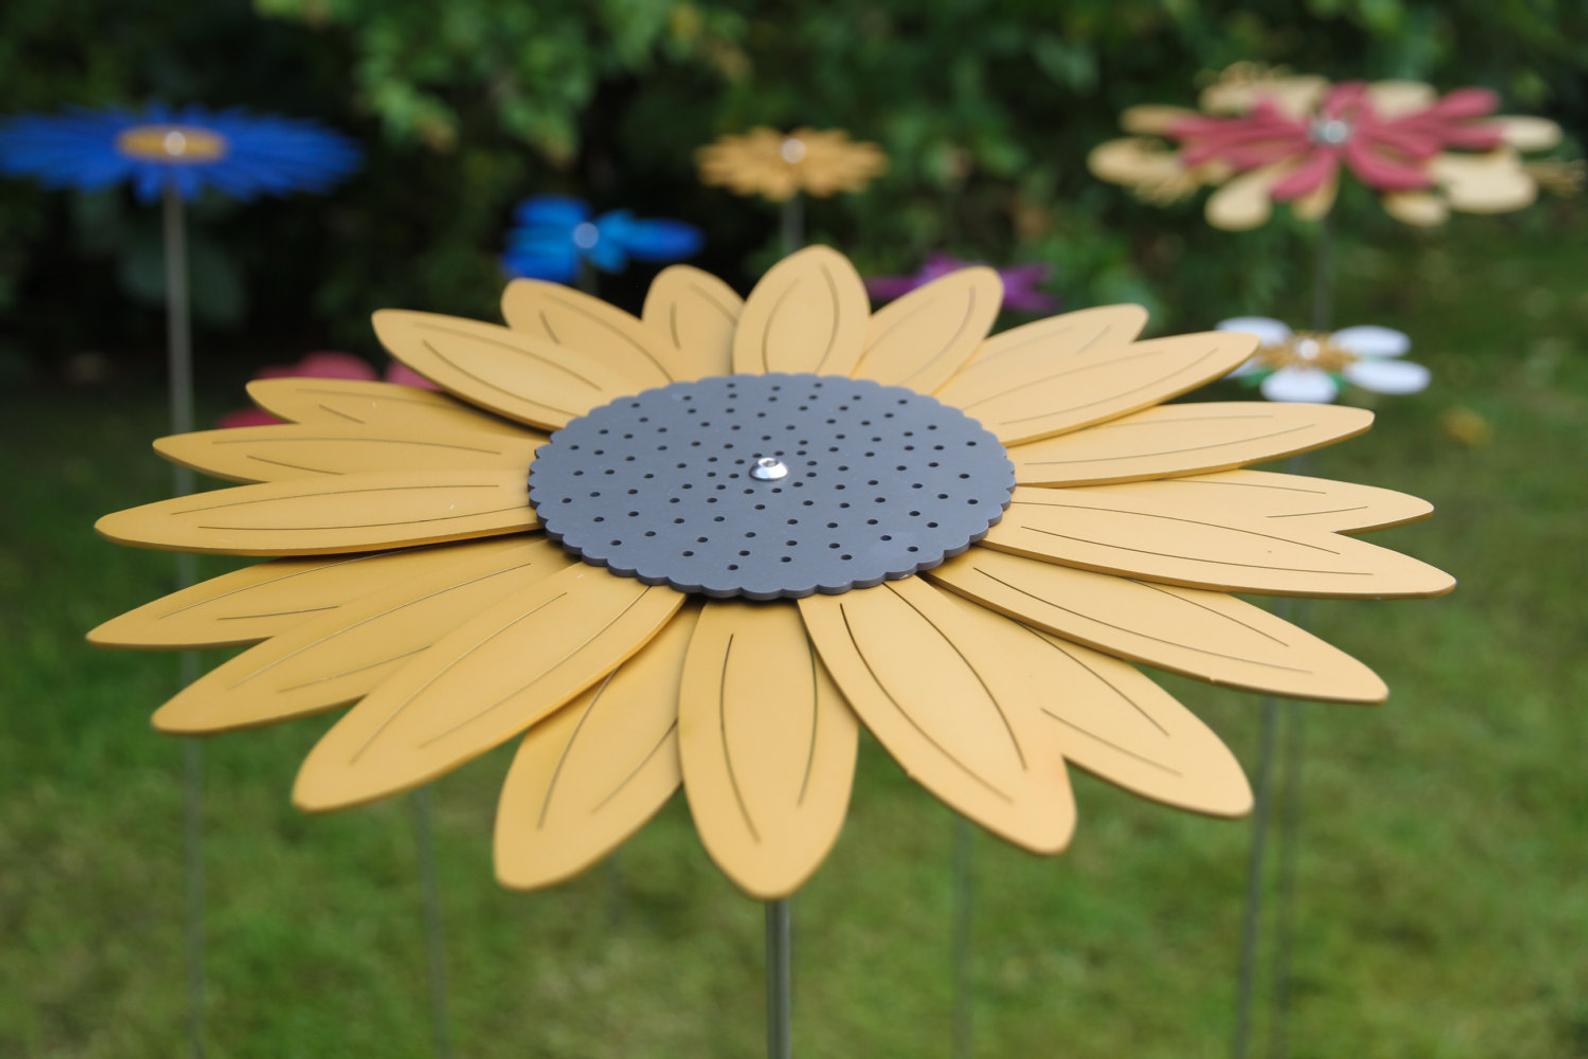 Sunflower - Pollination Flower Garden Stem, Ornament, Decoration, Sculpture